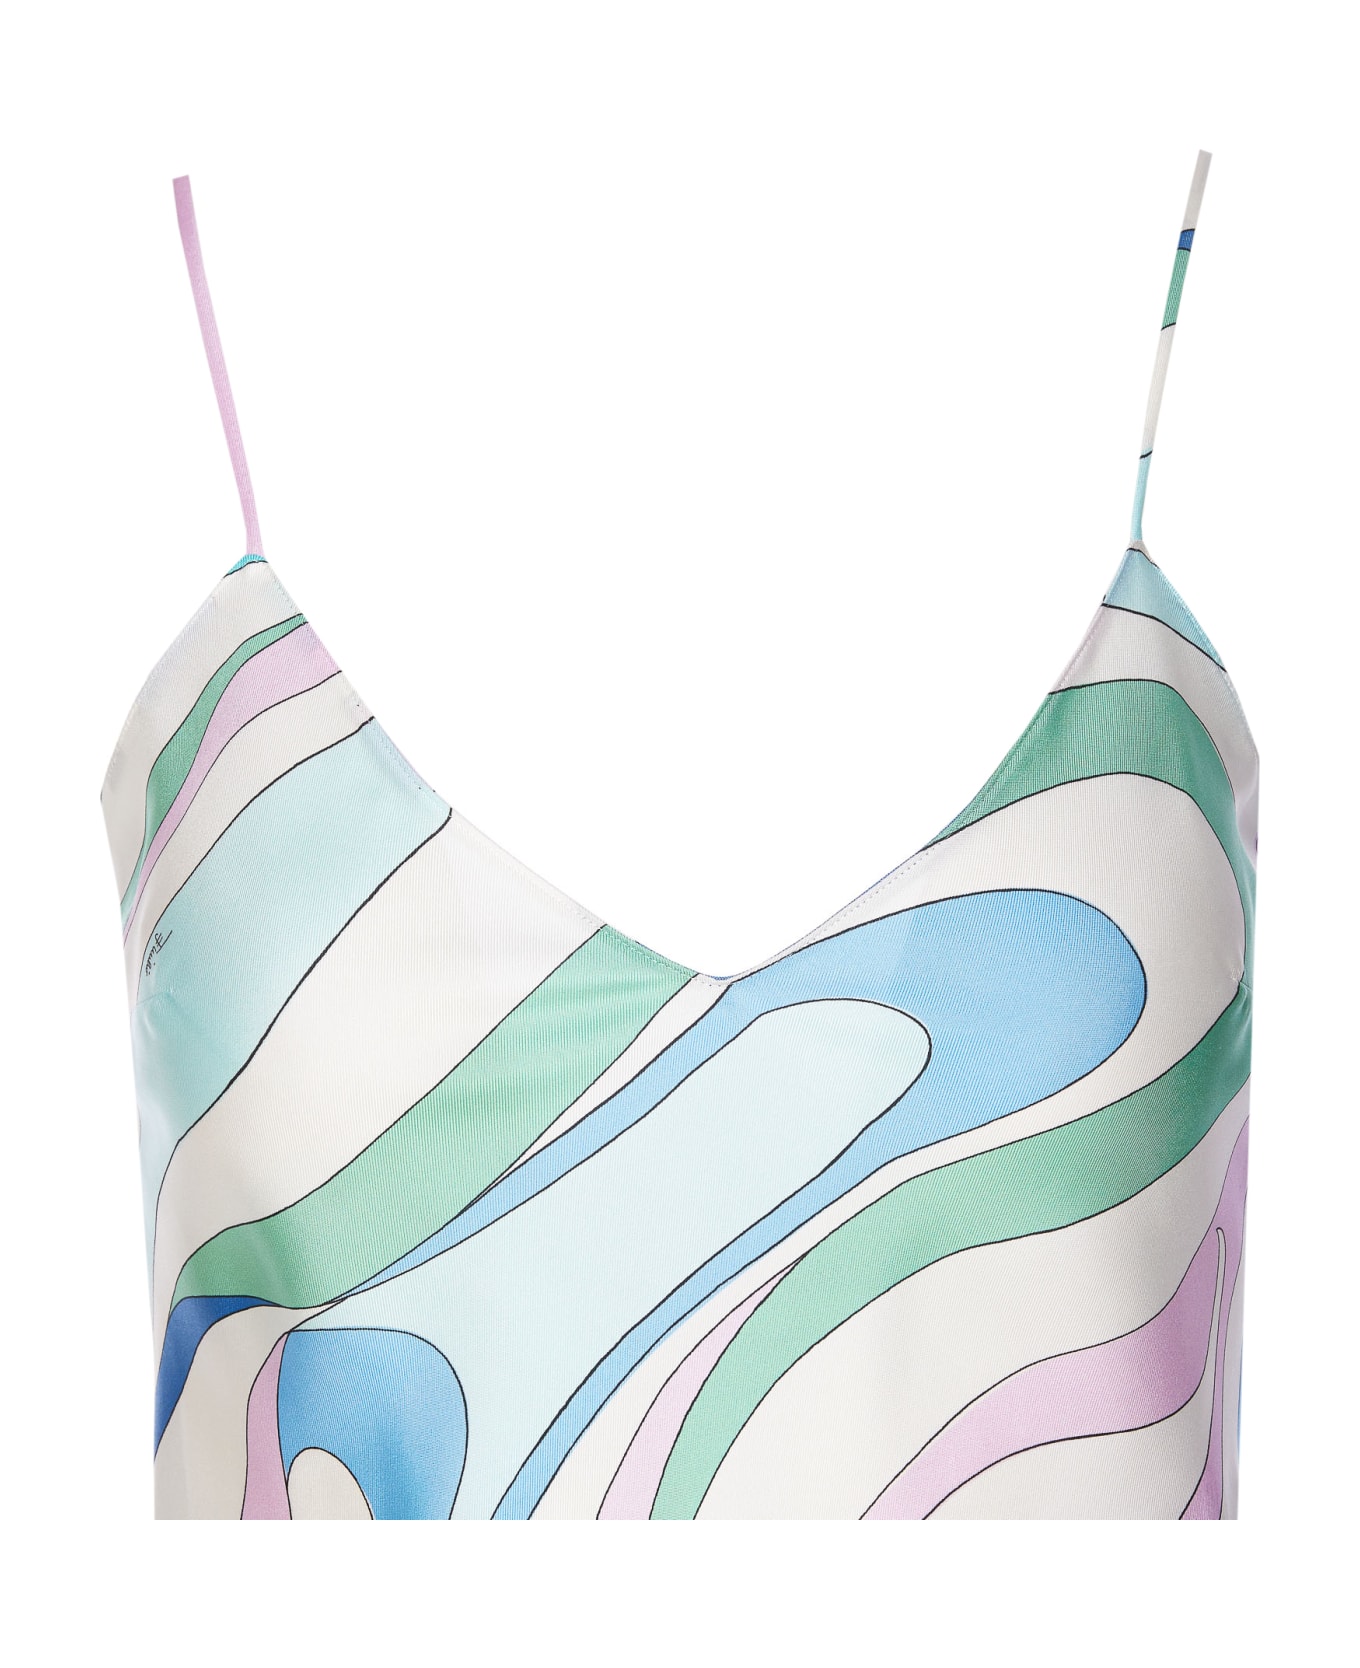 Pucci Marmo Print Silk Top - MultiColour